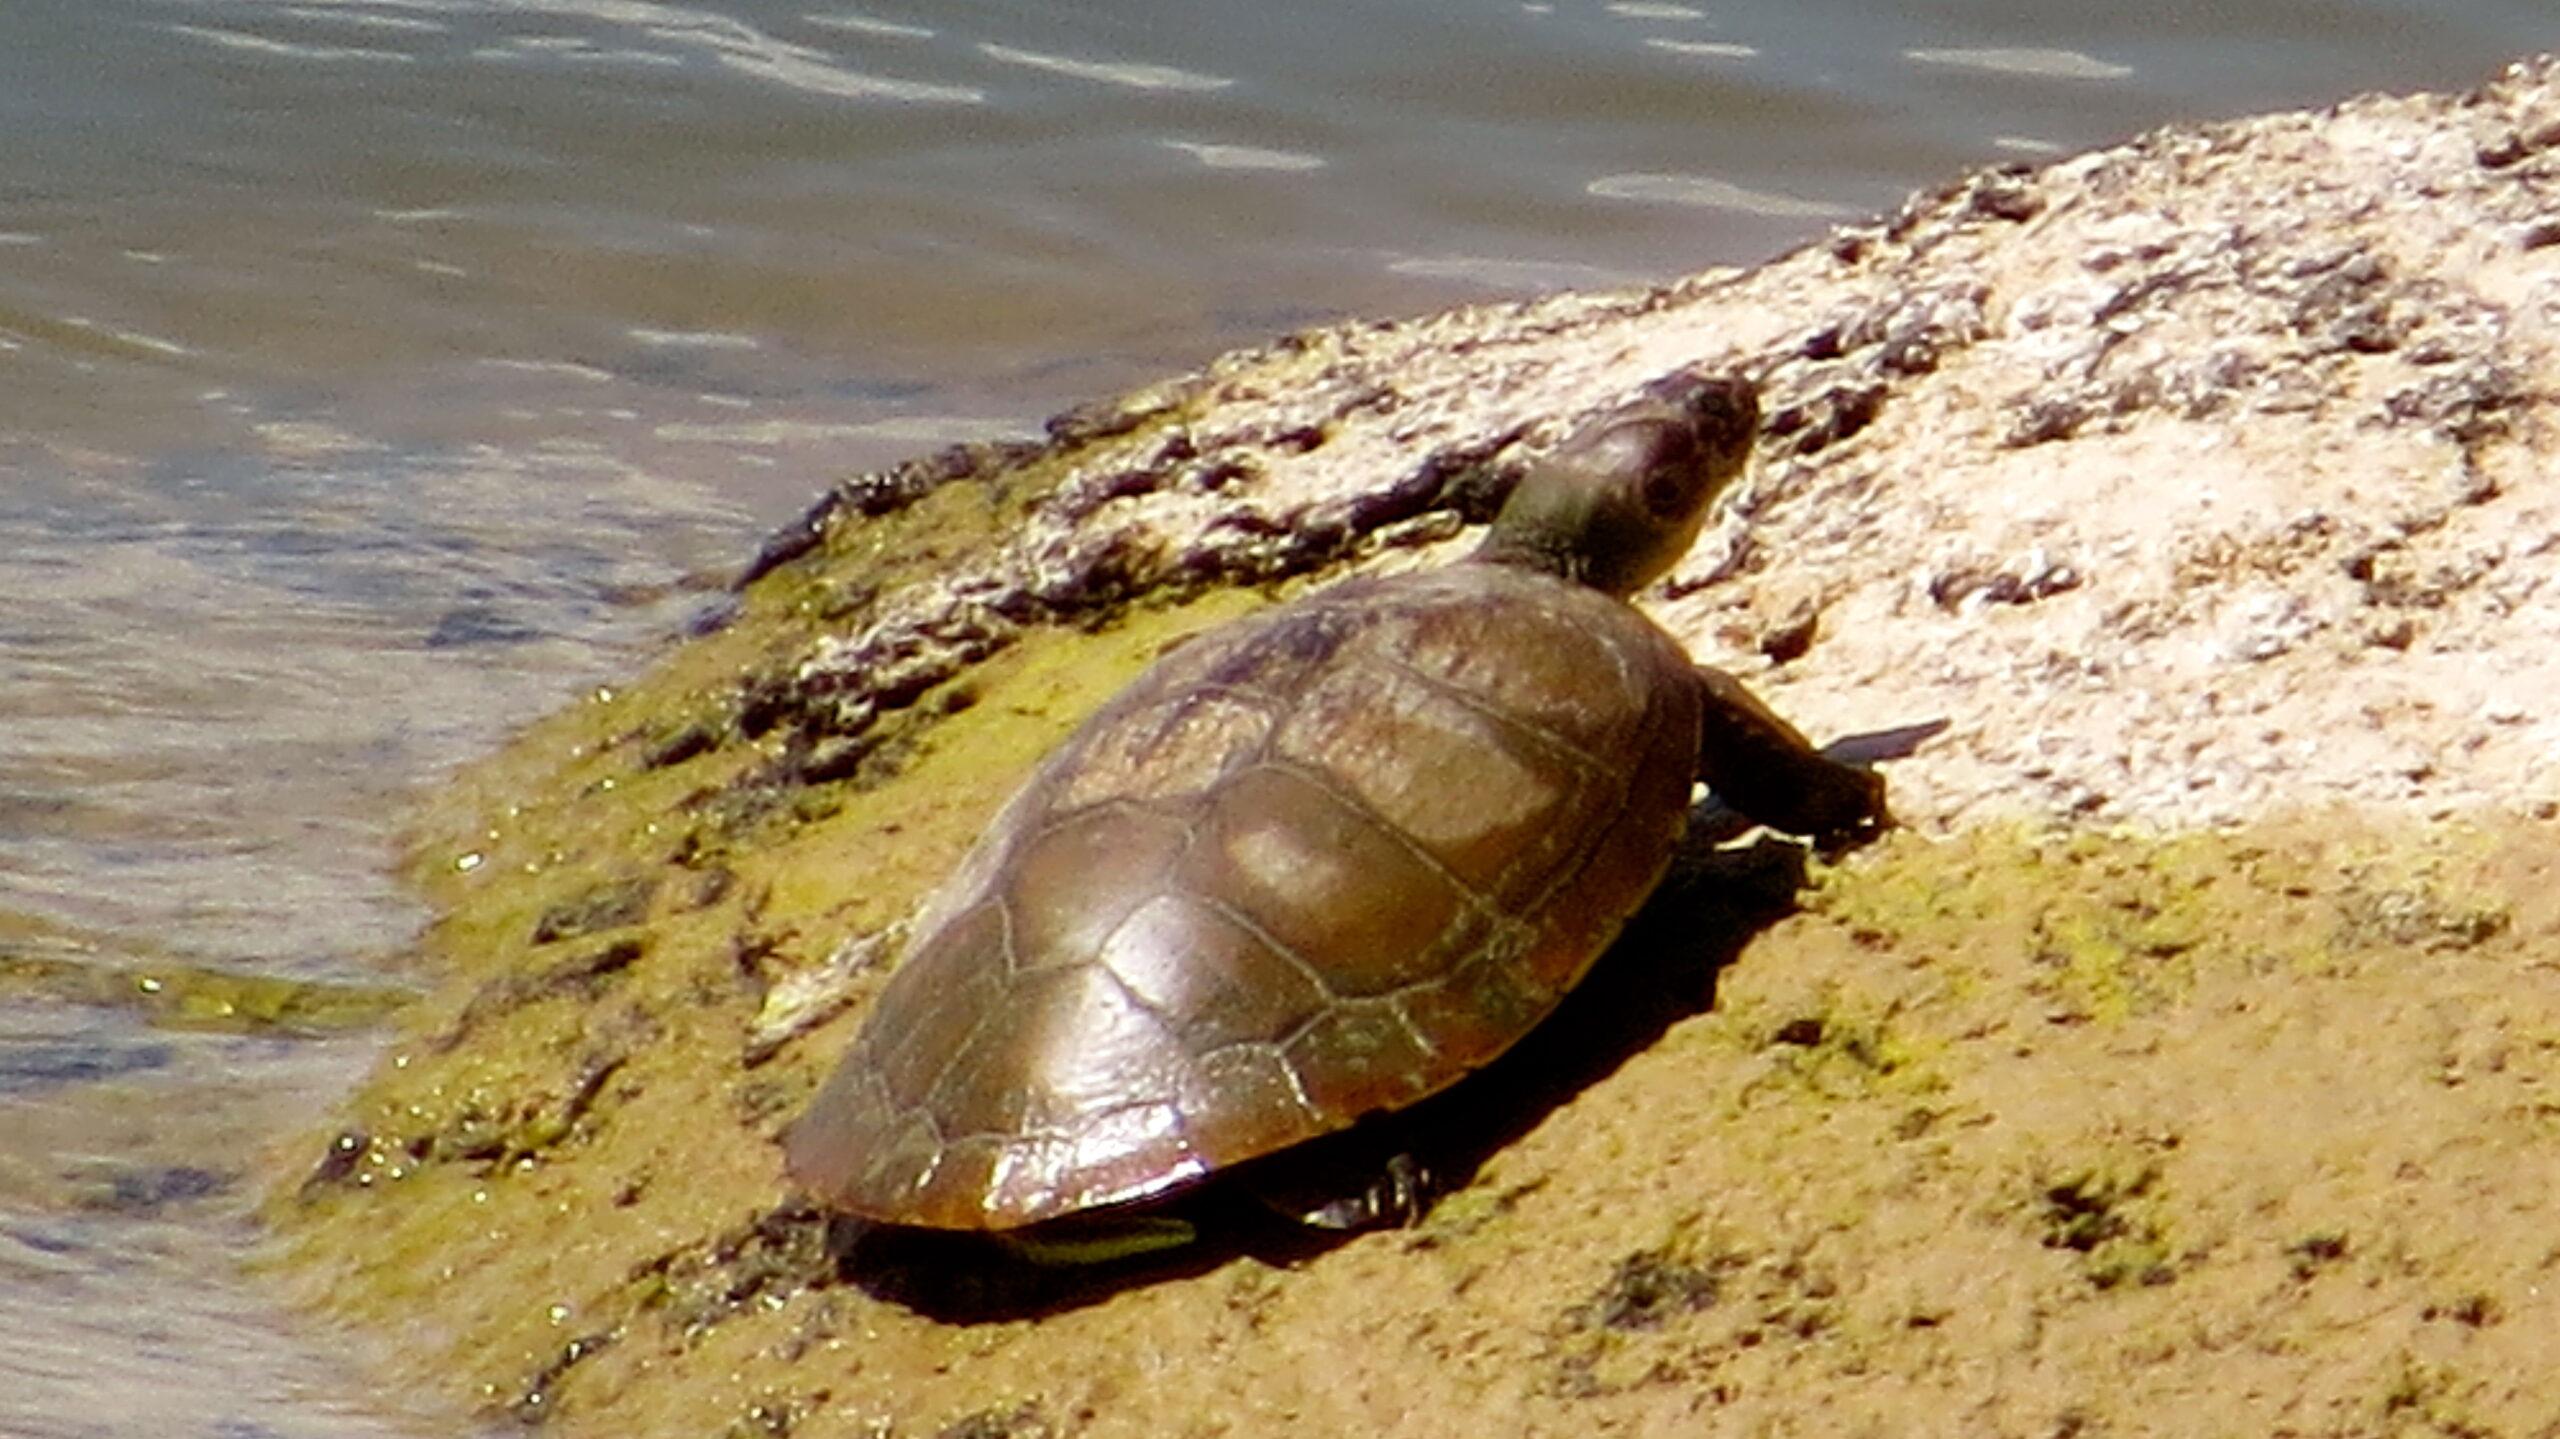 Monitoreo y conservación de tortuga Arrau (Podocnemis expansa) y Terecay (Podocnemis unifilis) en los ríos Tuparro y Tomo del PNN El Tuparro